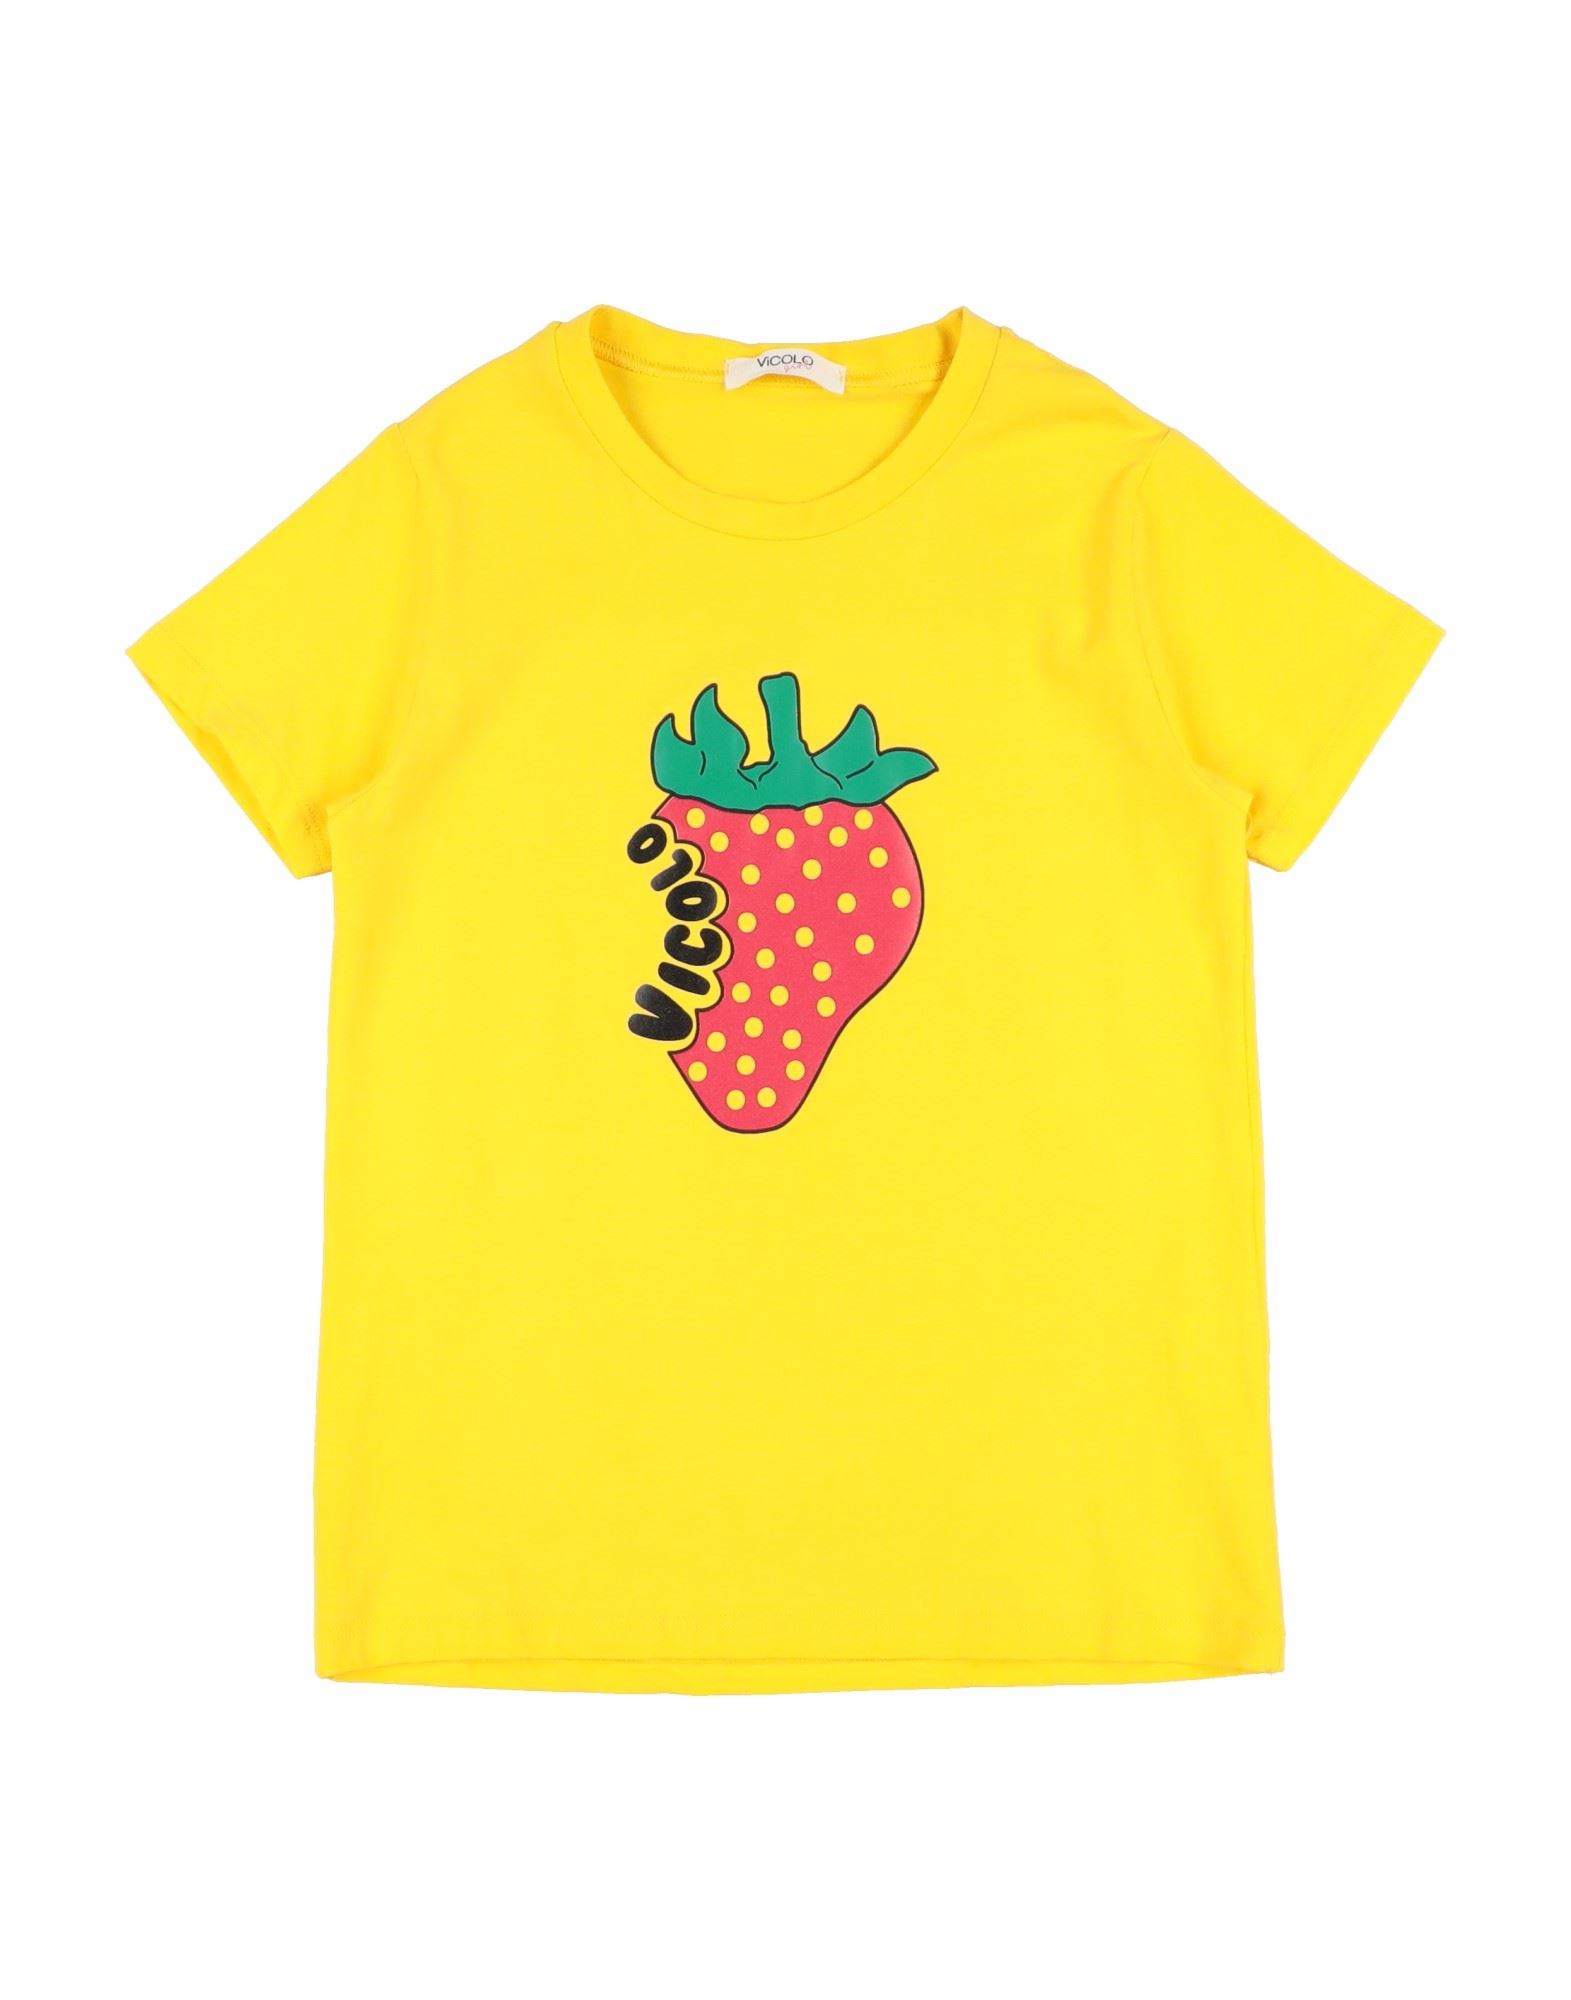 VICOLO T-shirts Kinder Gelb von VICOLO